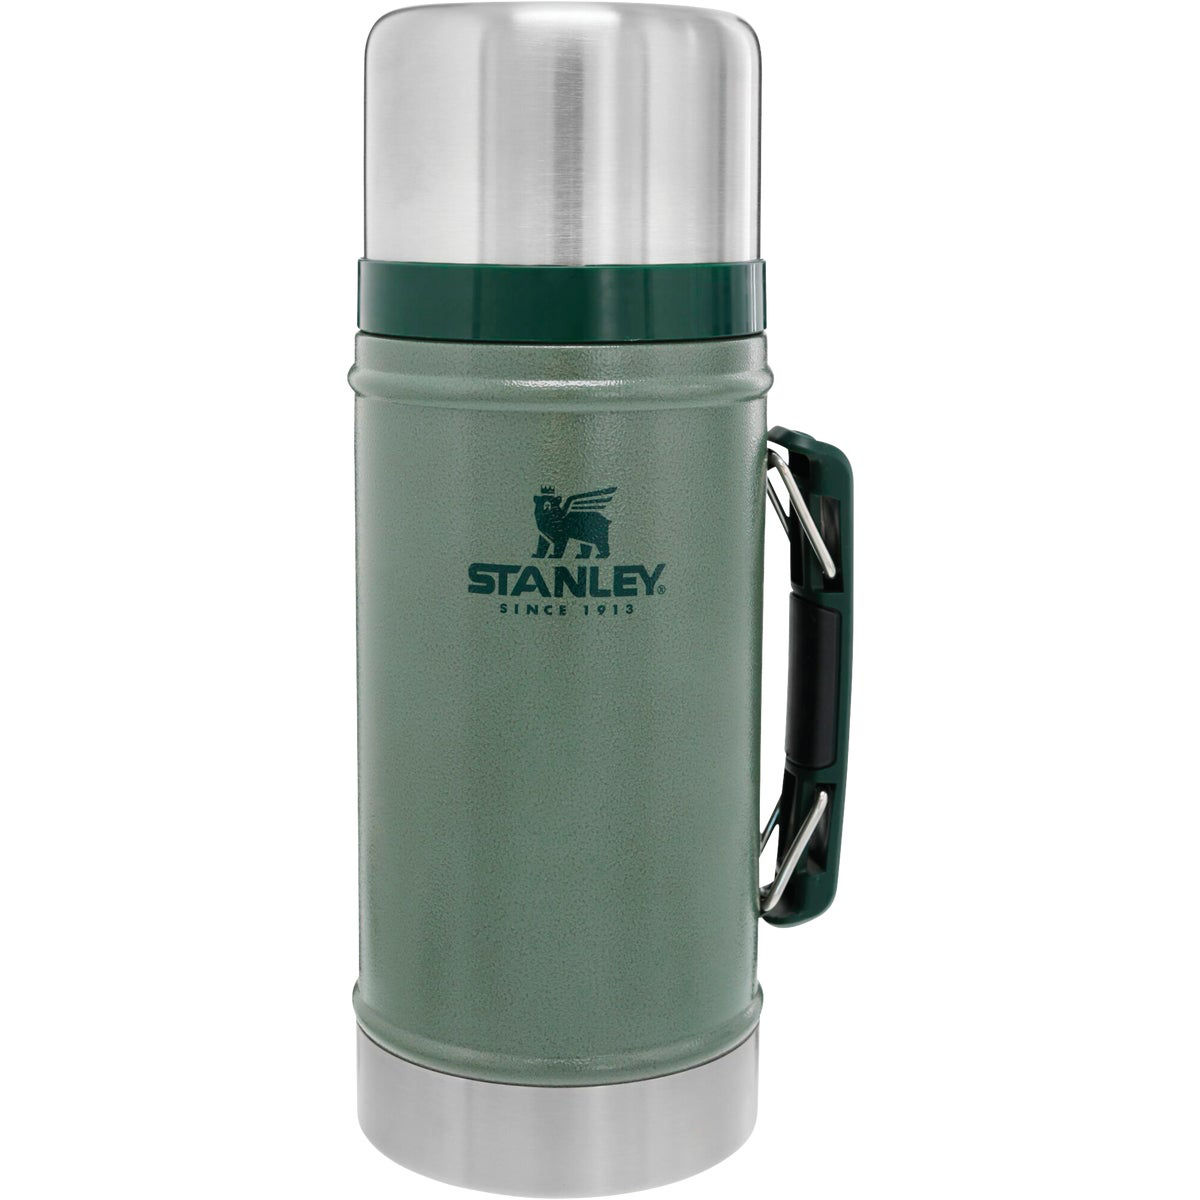 Stanley 24 Oz. Green Stainless Steel Thermal Food Jar Mug